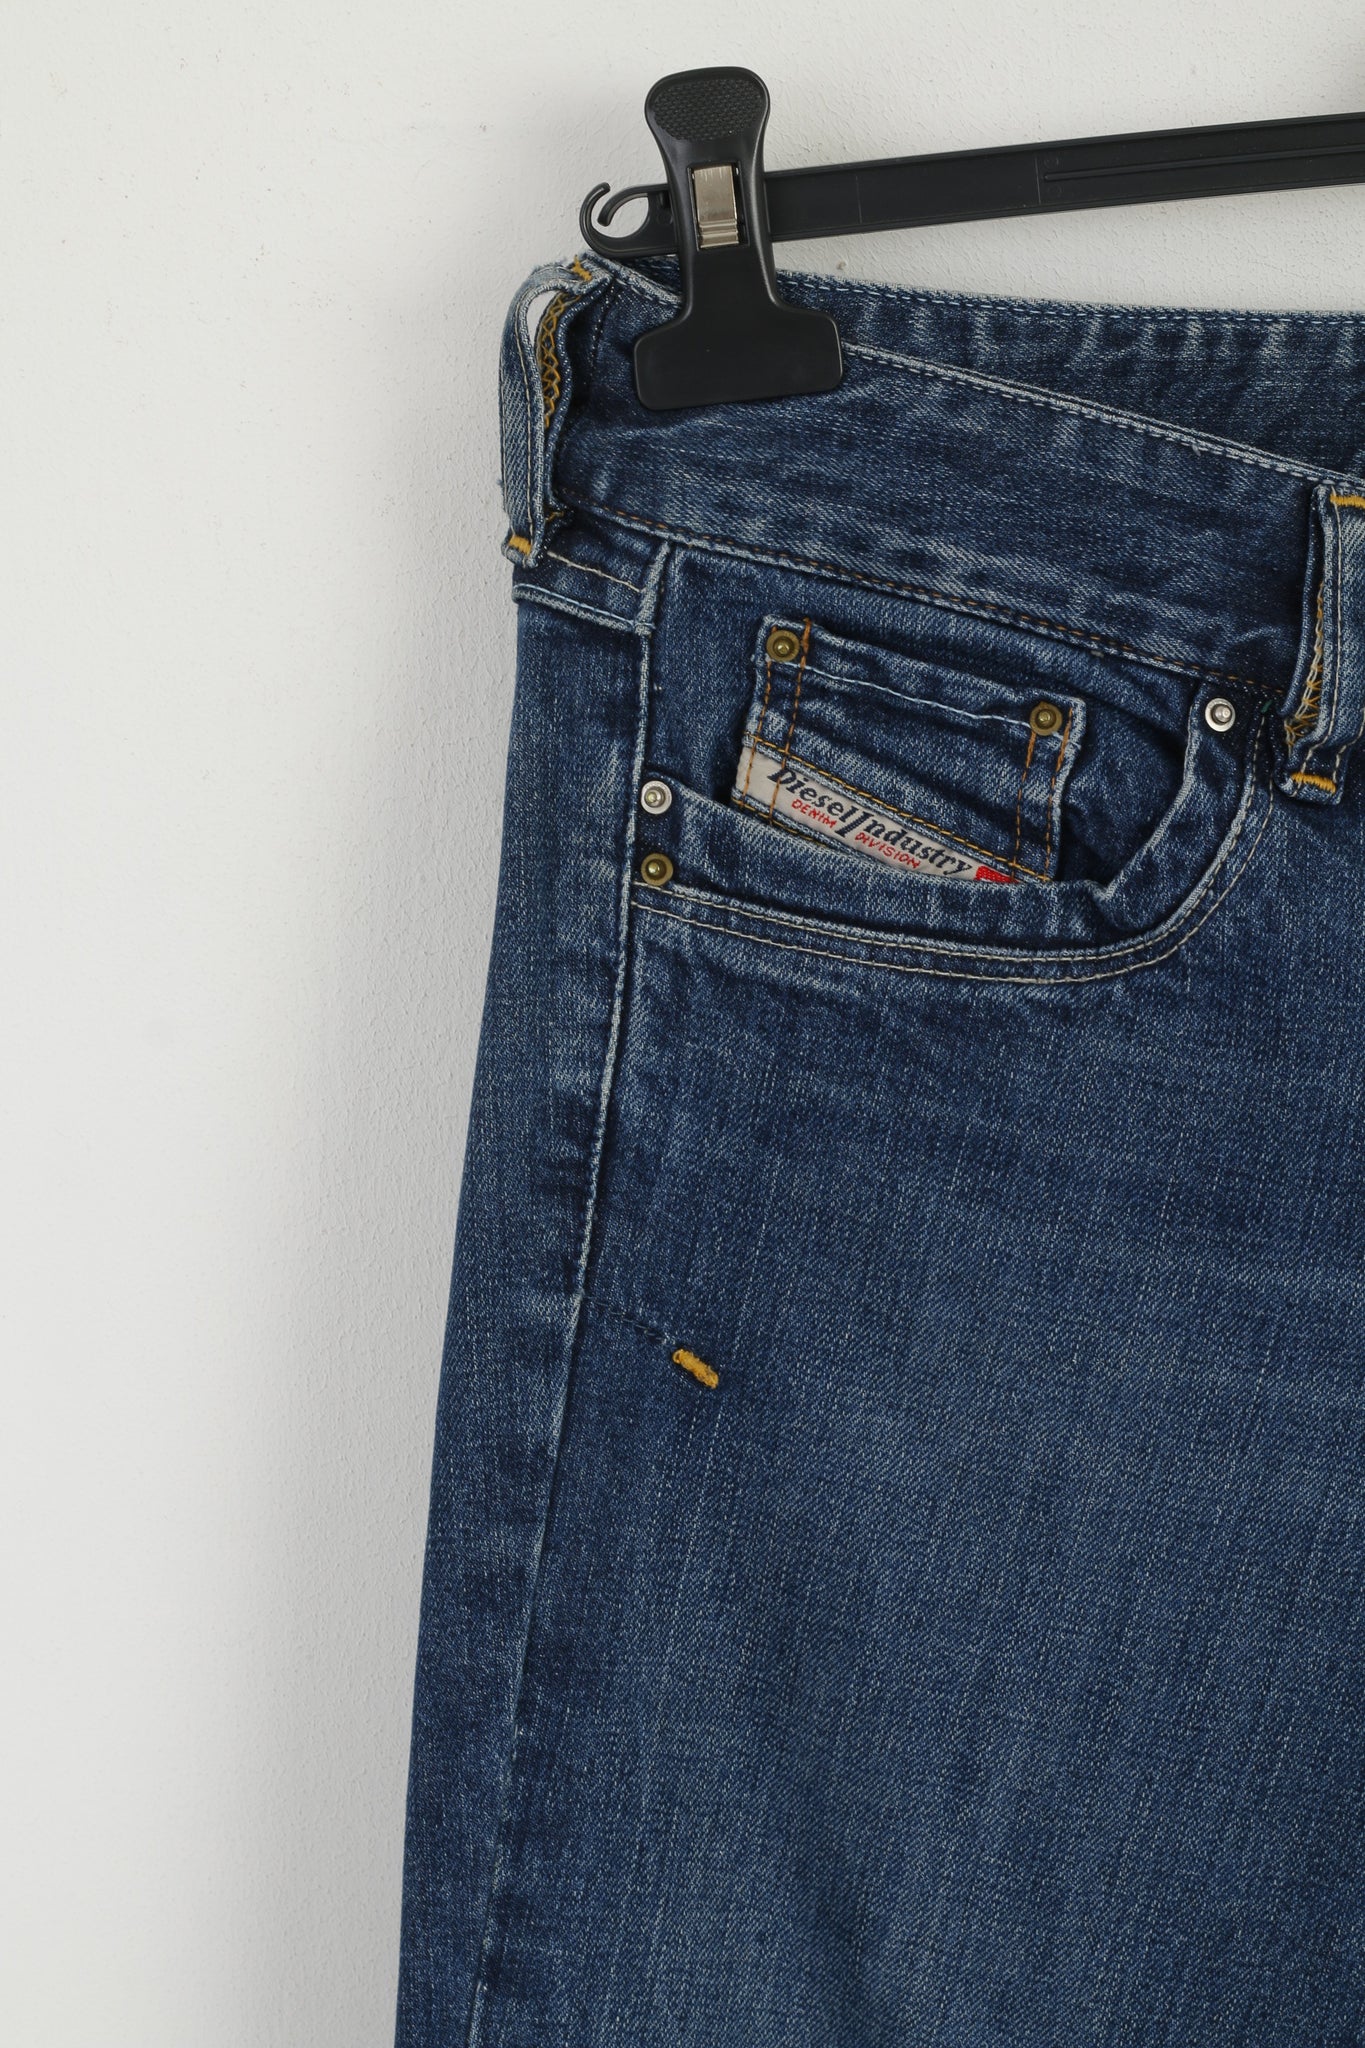 Diesel Industry Women 27 Trousers Navy Denim Cotton Bootcut Jeans Pant Retrospectclothes